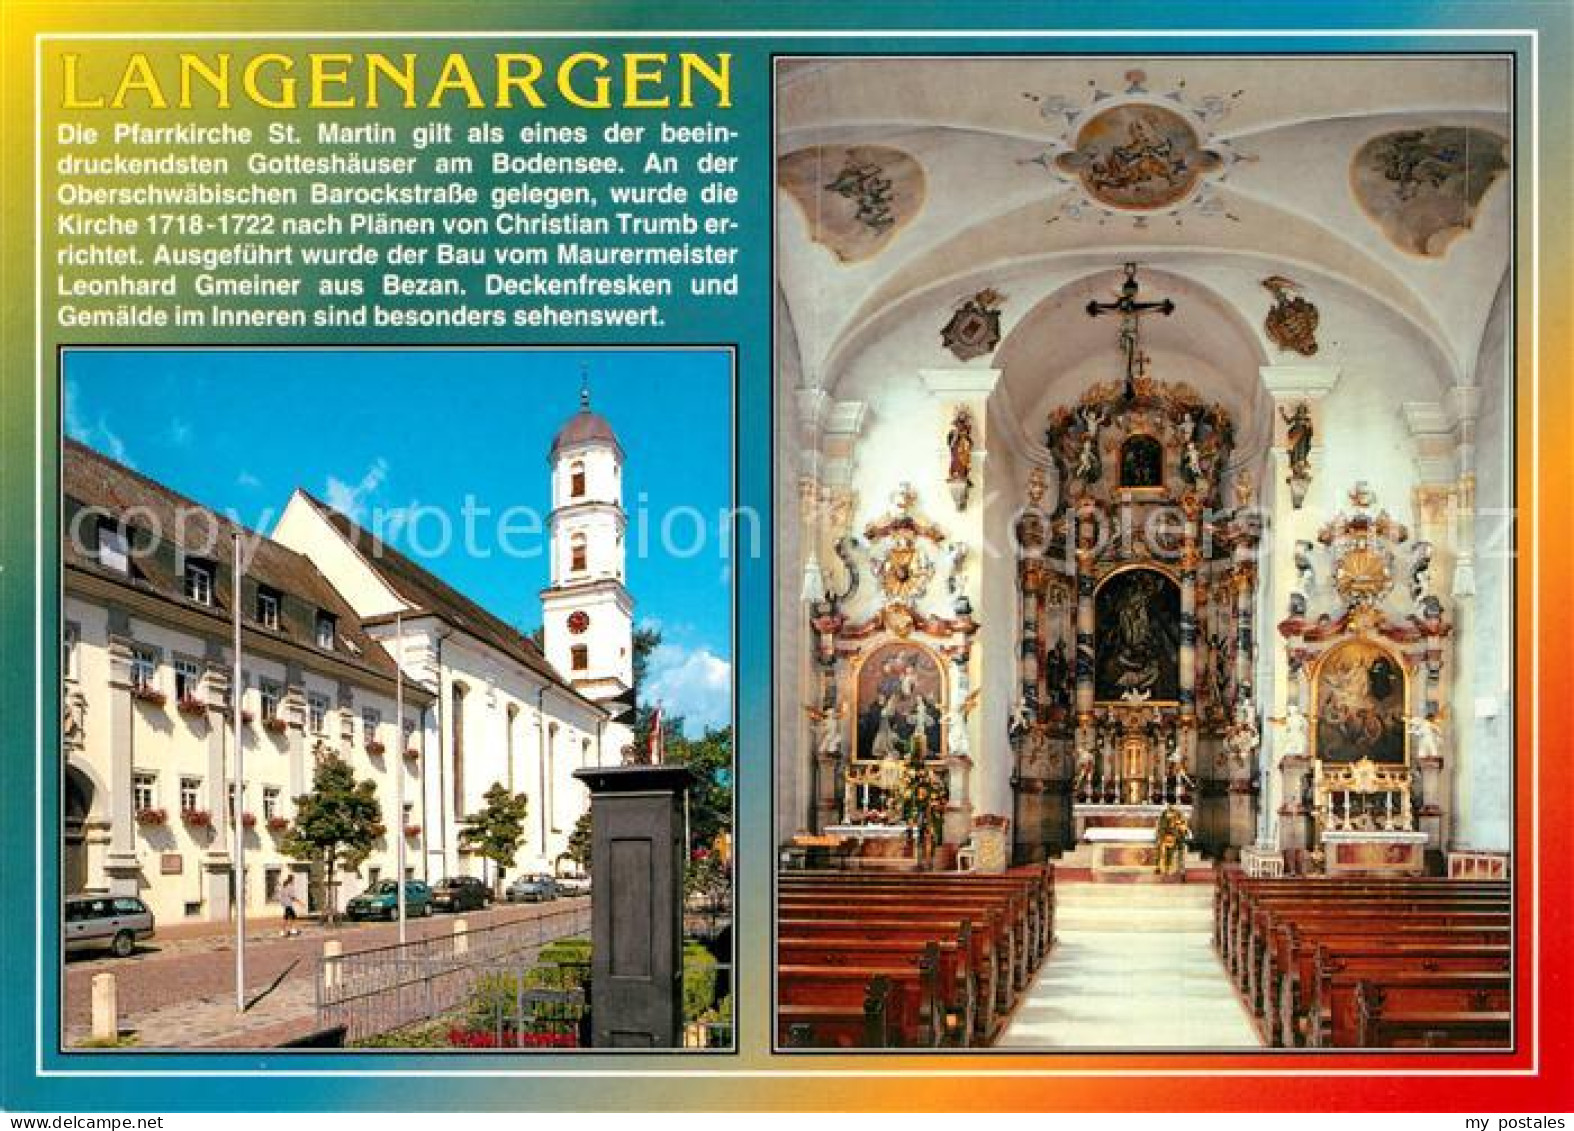 73225659 Langenargen Bodensee Pfarrkirche St Martin Inneres Langenargen Bodensee - Langenargen